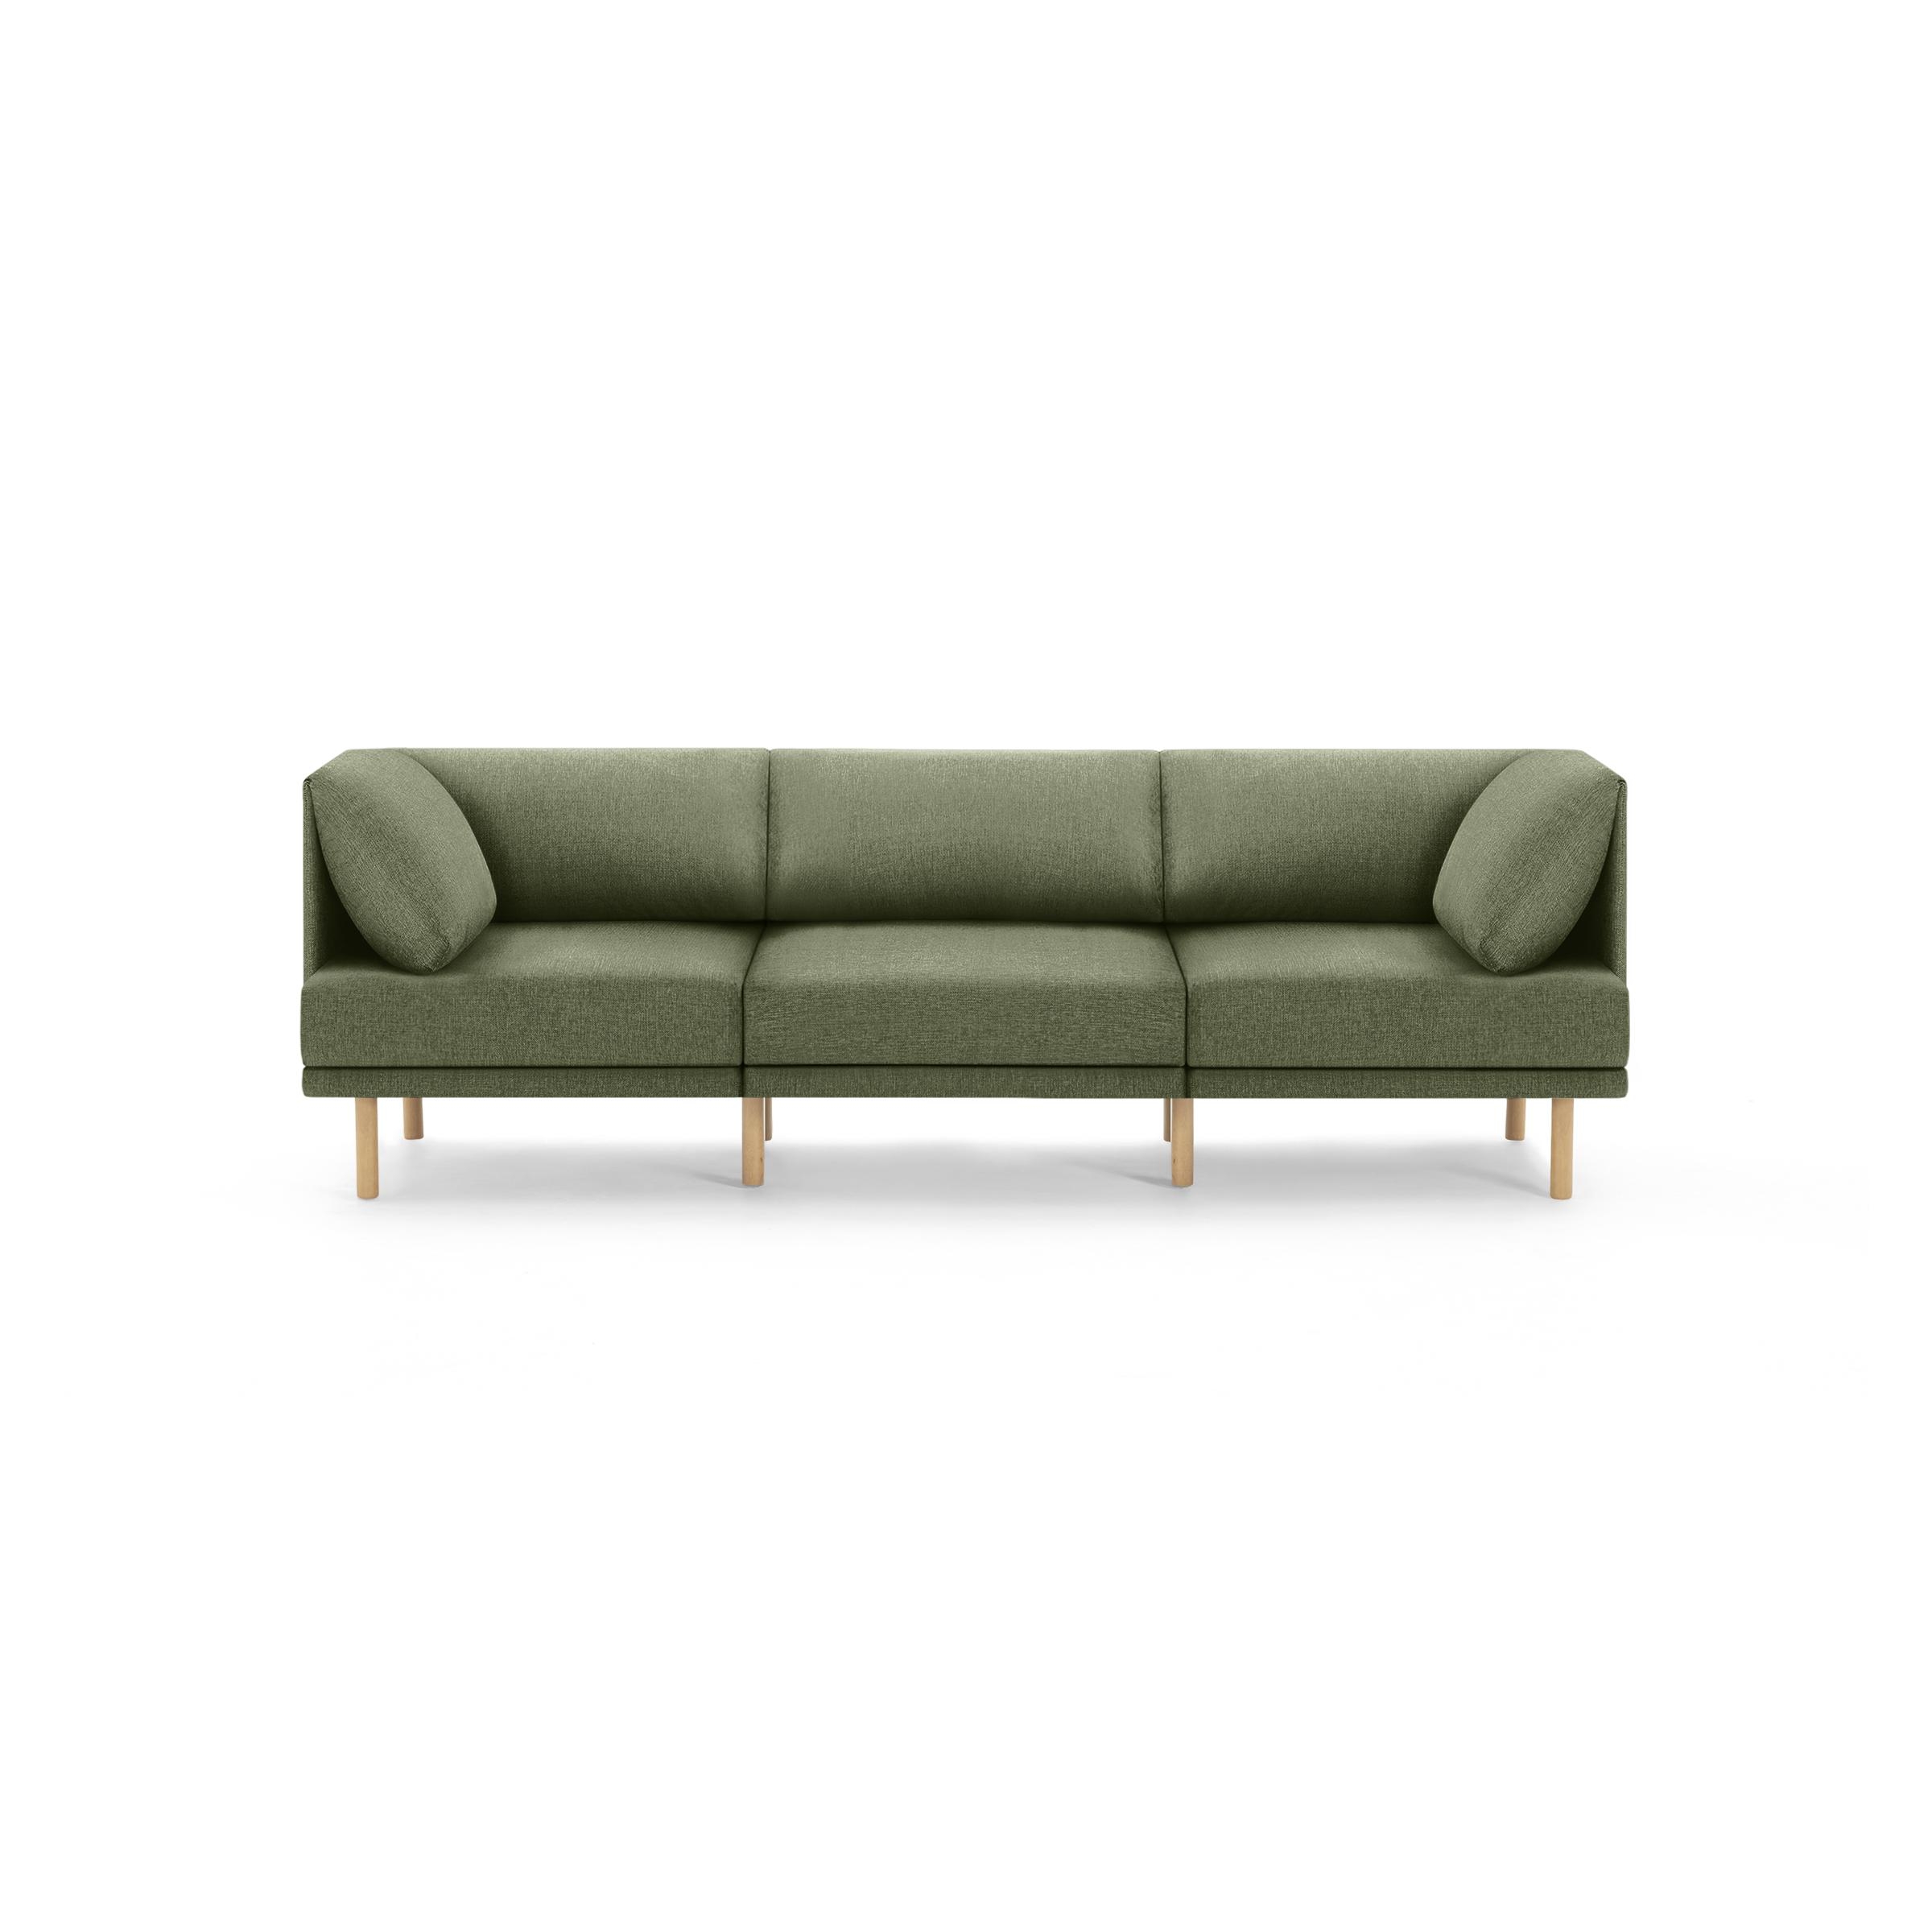 The Range 3-Piece Sofa in Moss Green, Oak Legs - Image 0